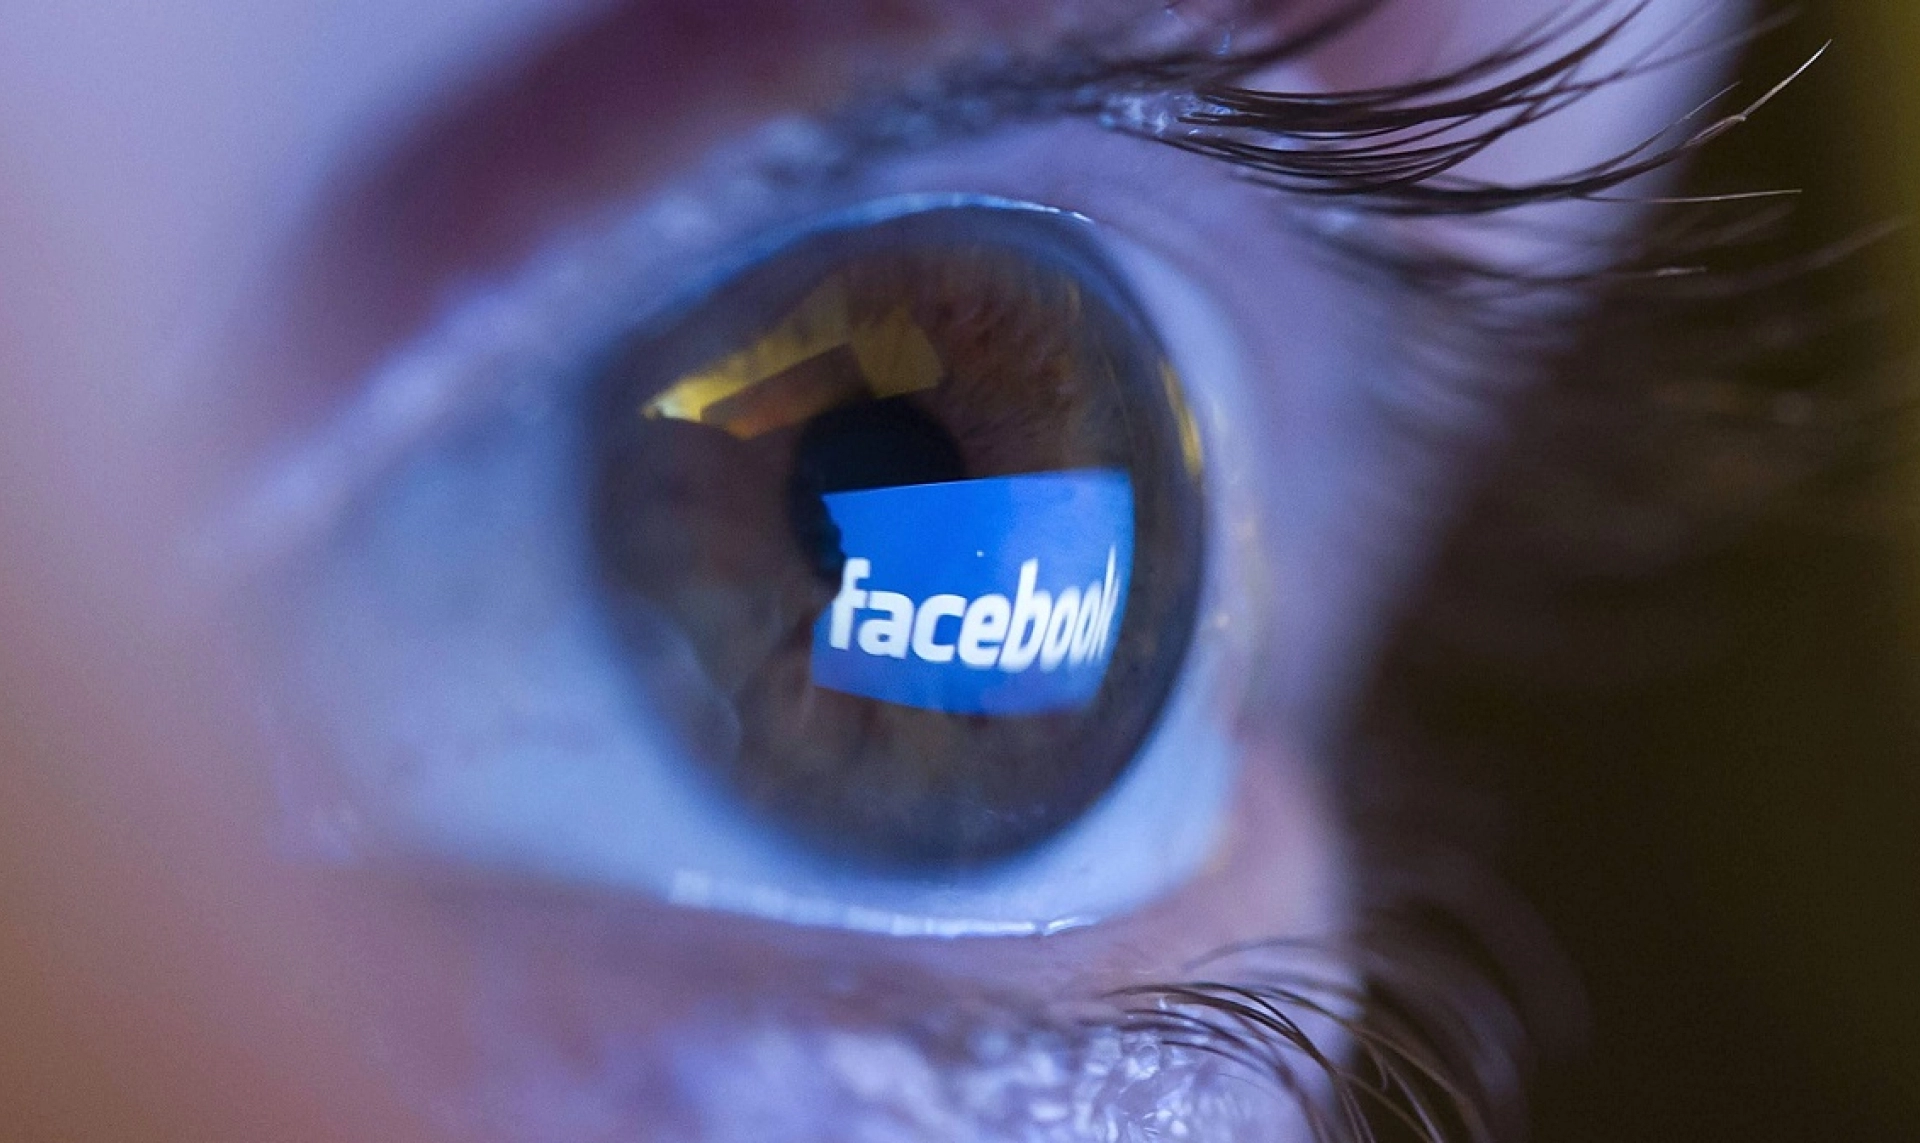 Как продвигаться в Facebook: полный пошаговый гайд по раскрутке страницы